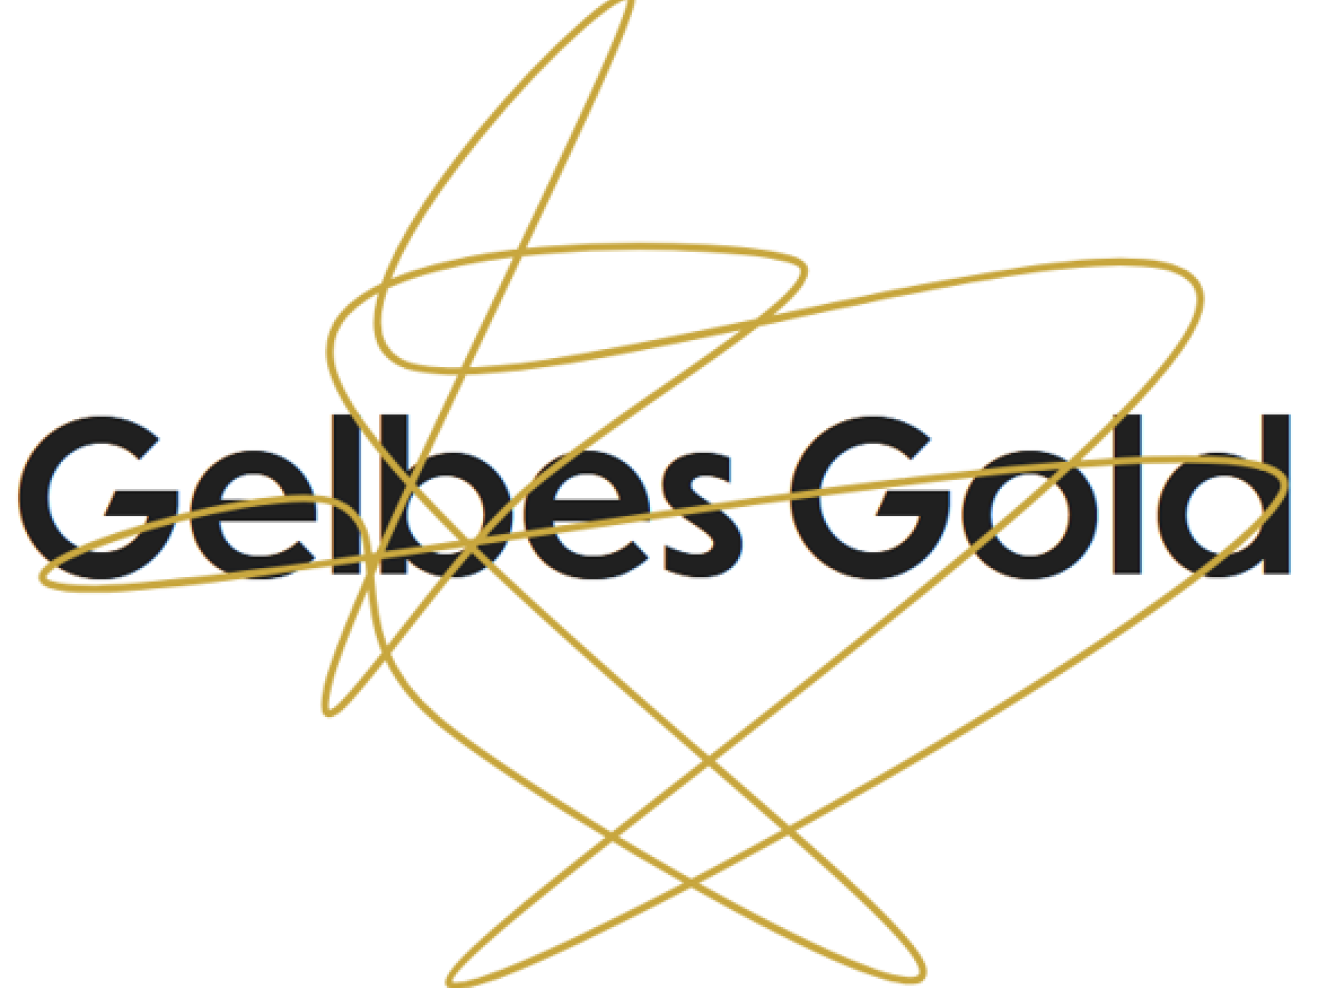 Titelschrift "Gelbes Gold" mit roter Schnörkel-Linie darüber.